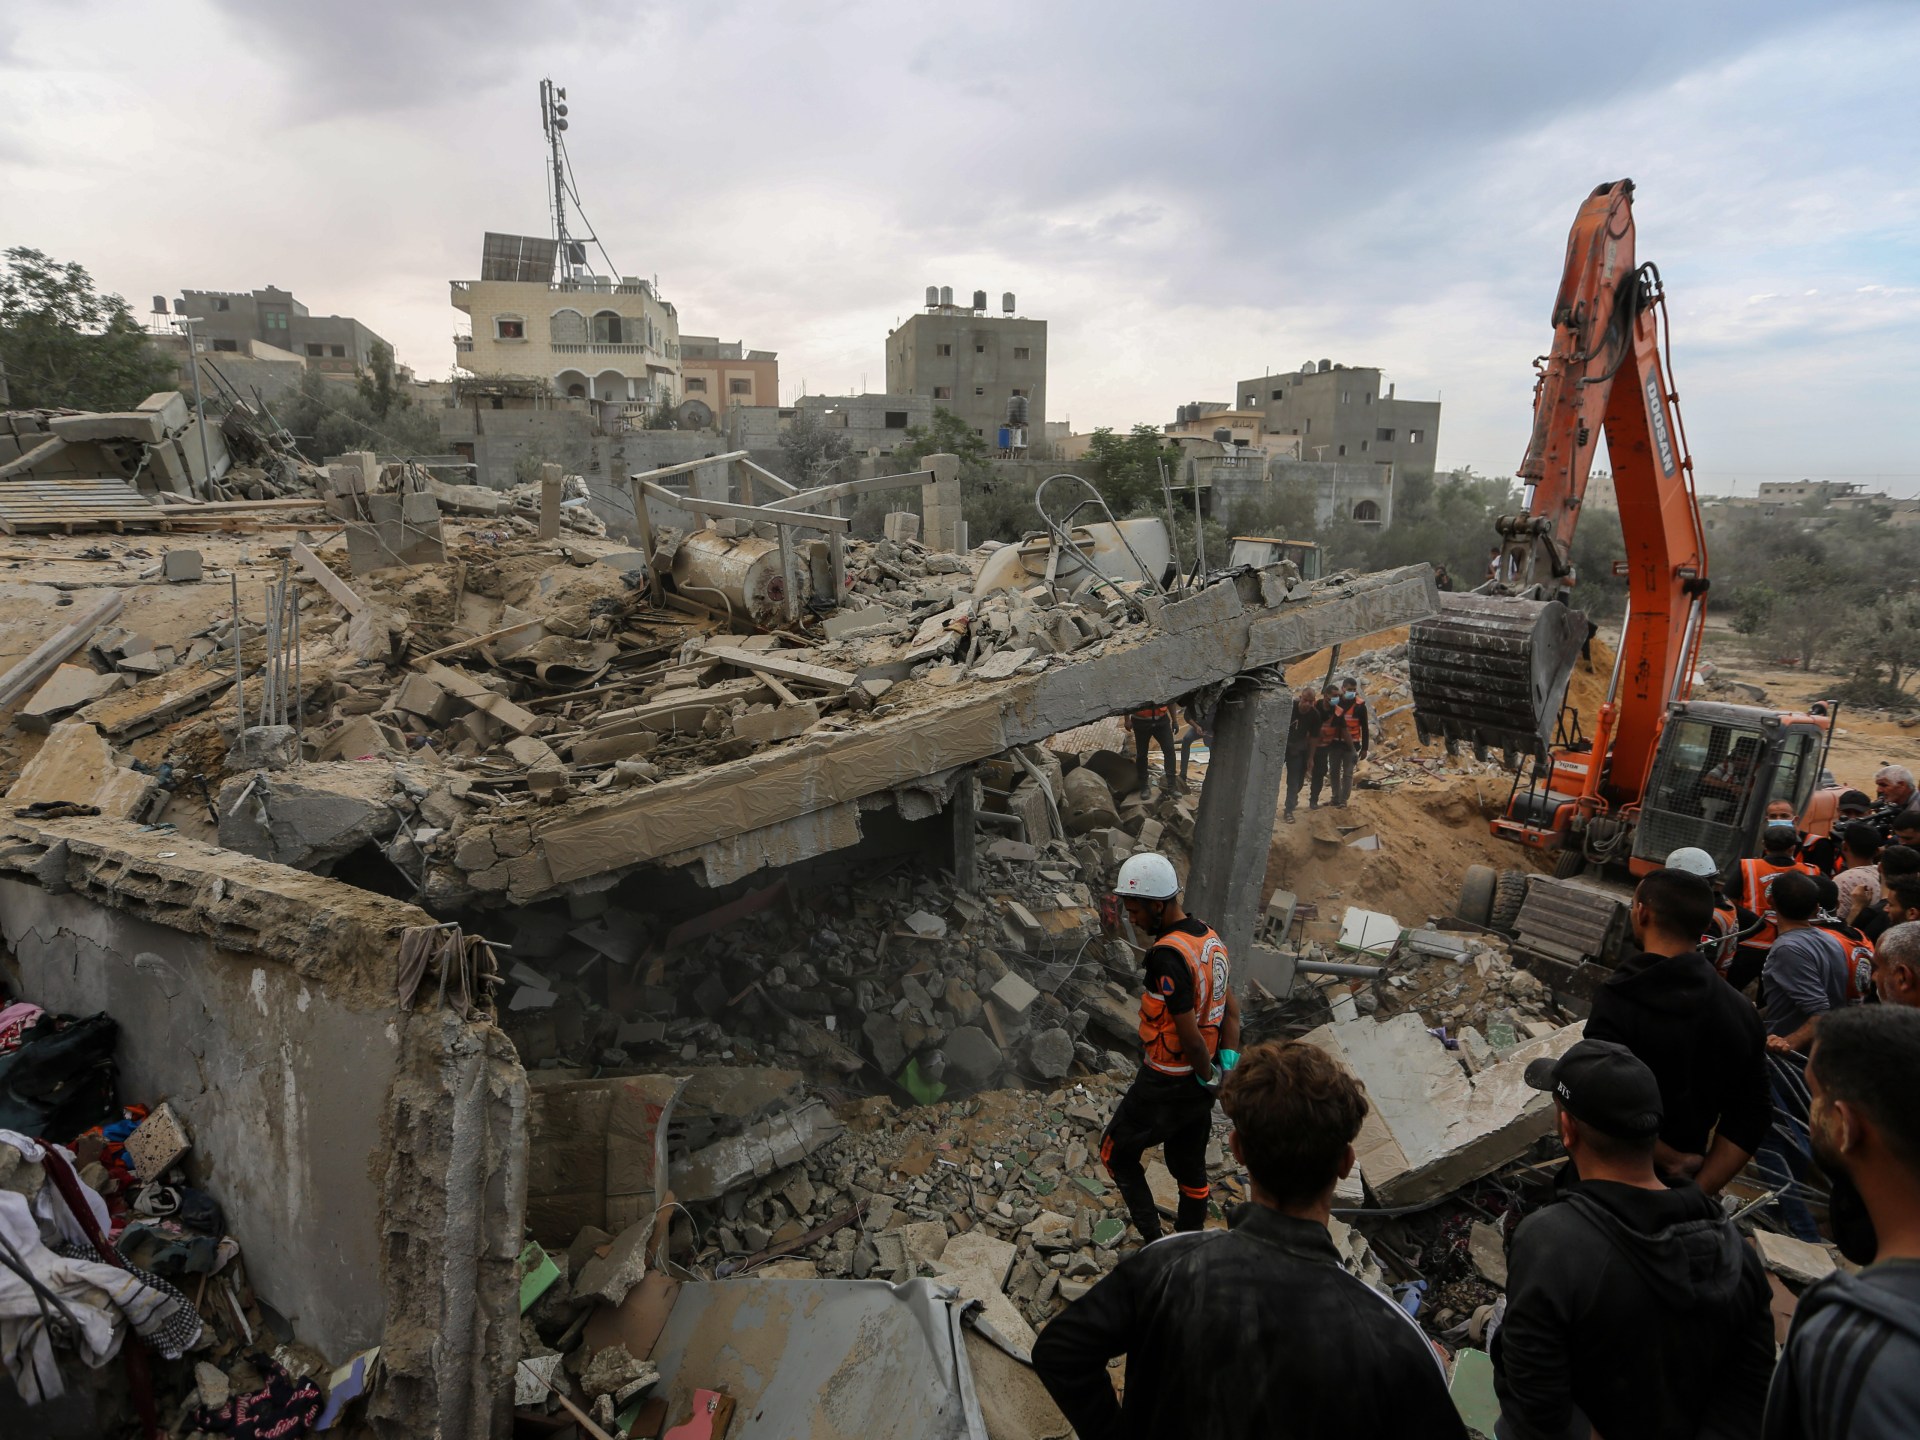 الحرب في عقر دارك.. ماذا لو كانت غزة مدينتك؟ | أخبار – البوكس نيوز